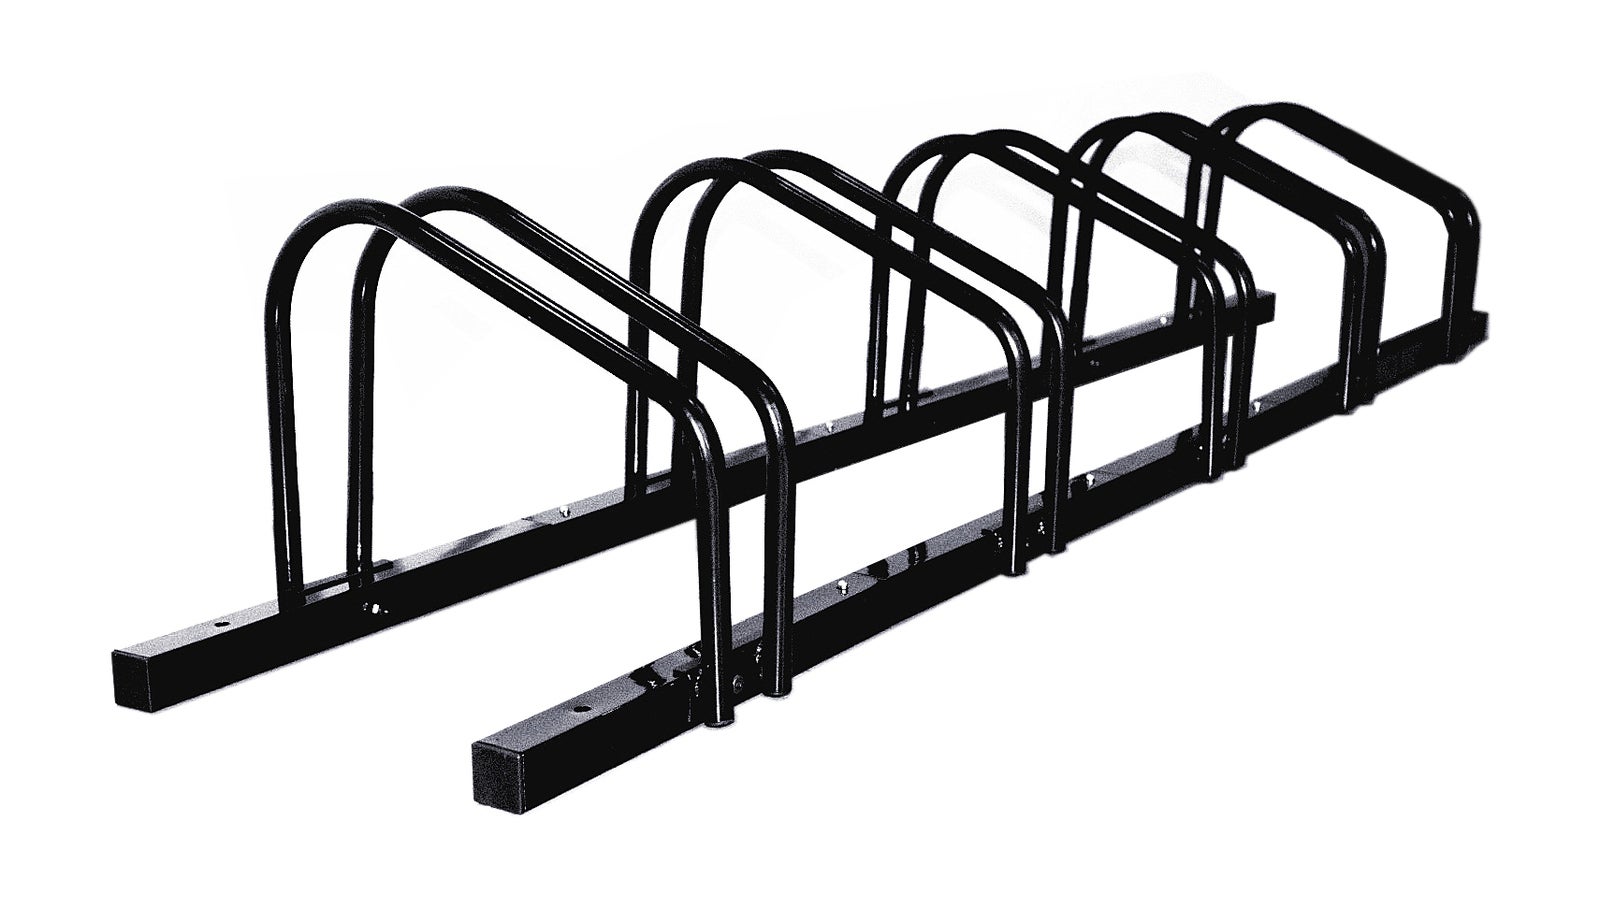 1 - 5 Bike Floor Parking Rack Storage Stand Bicycle Black